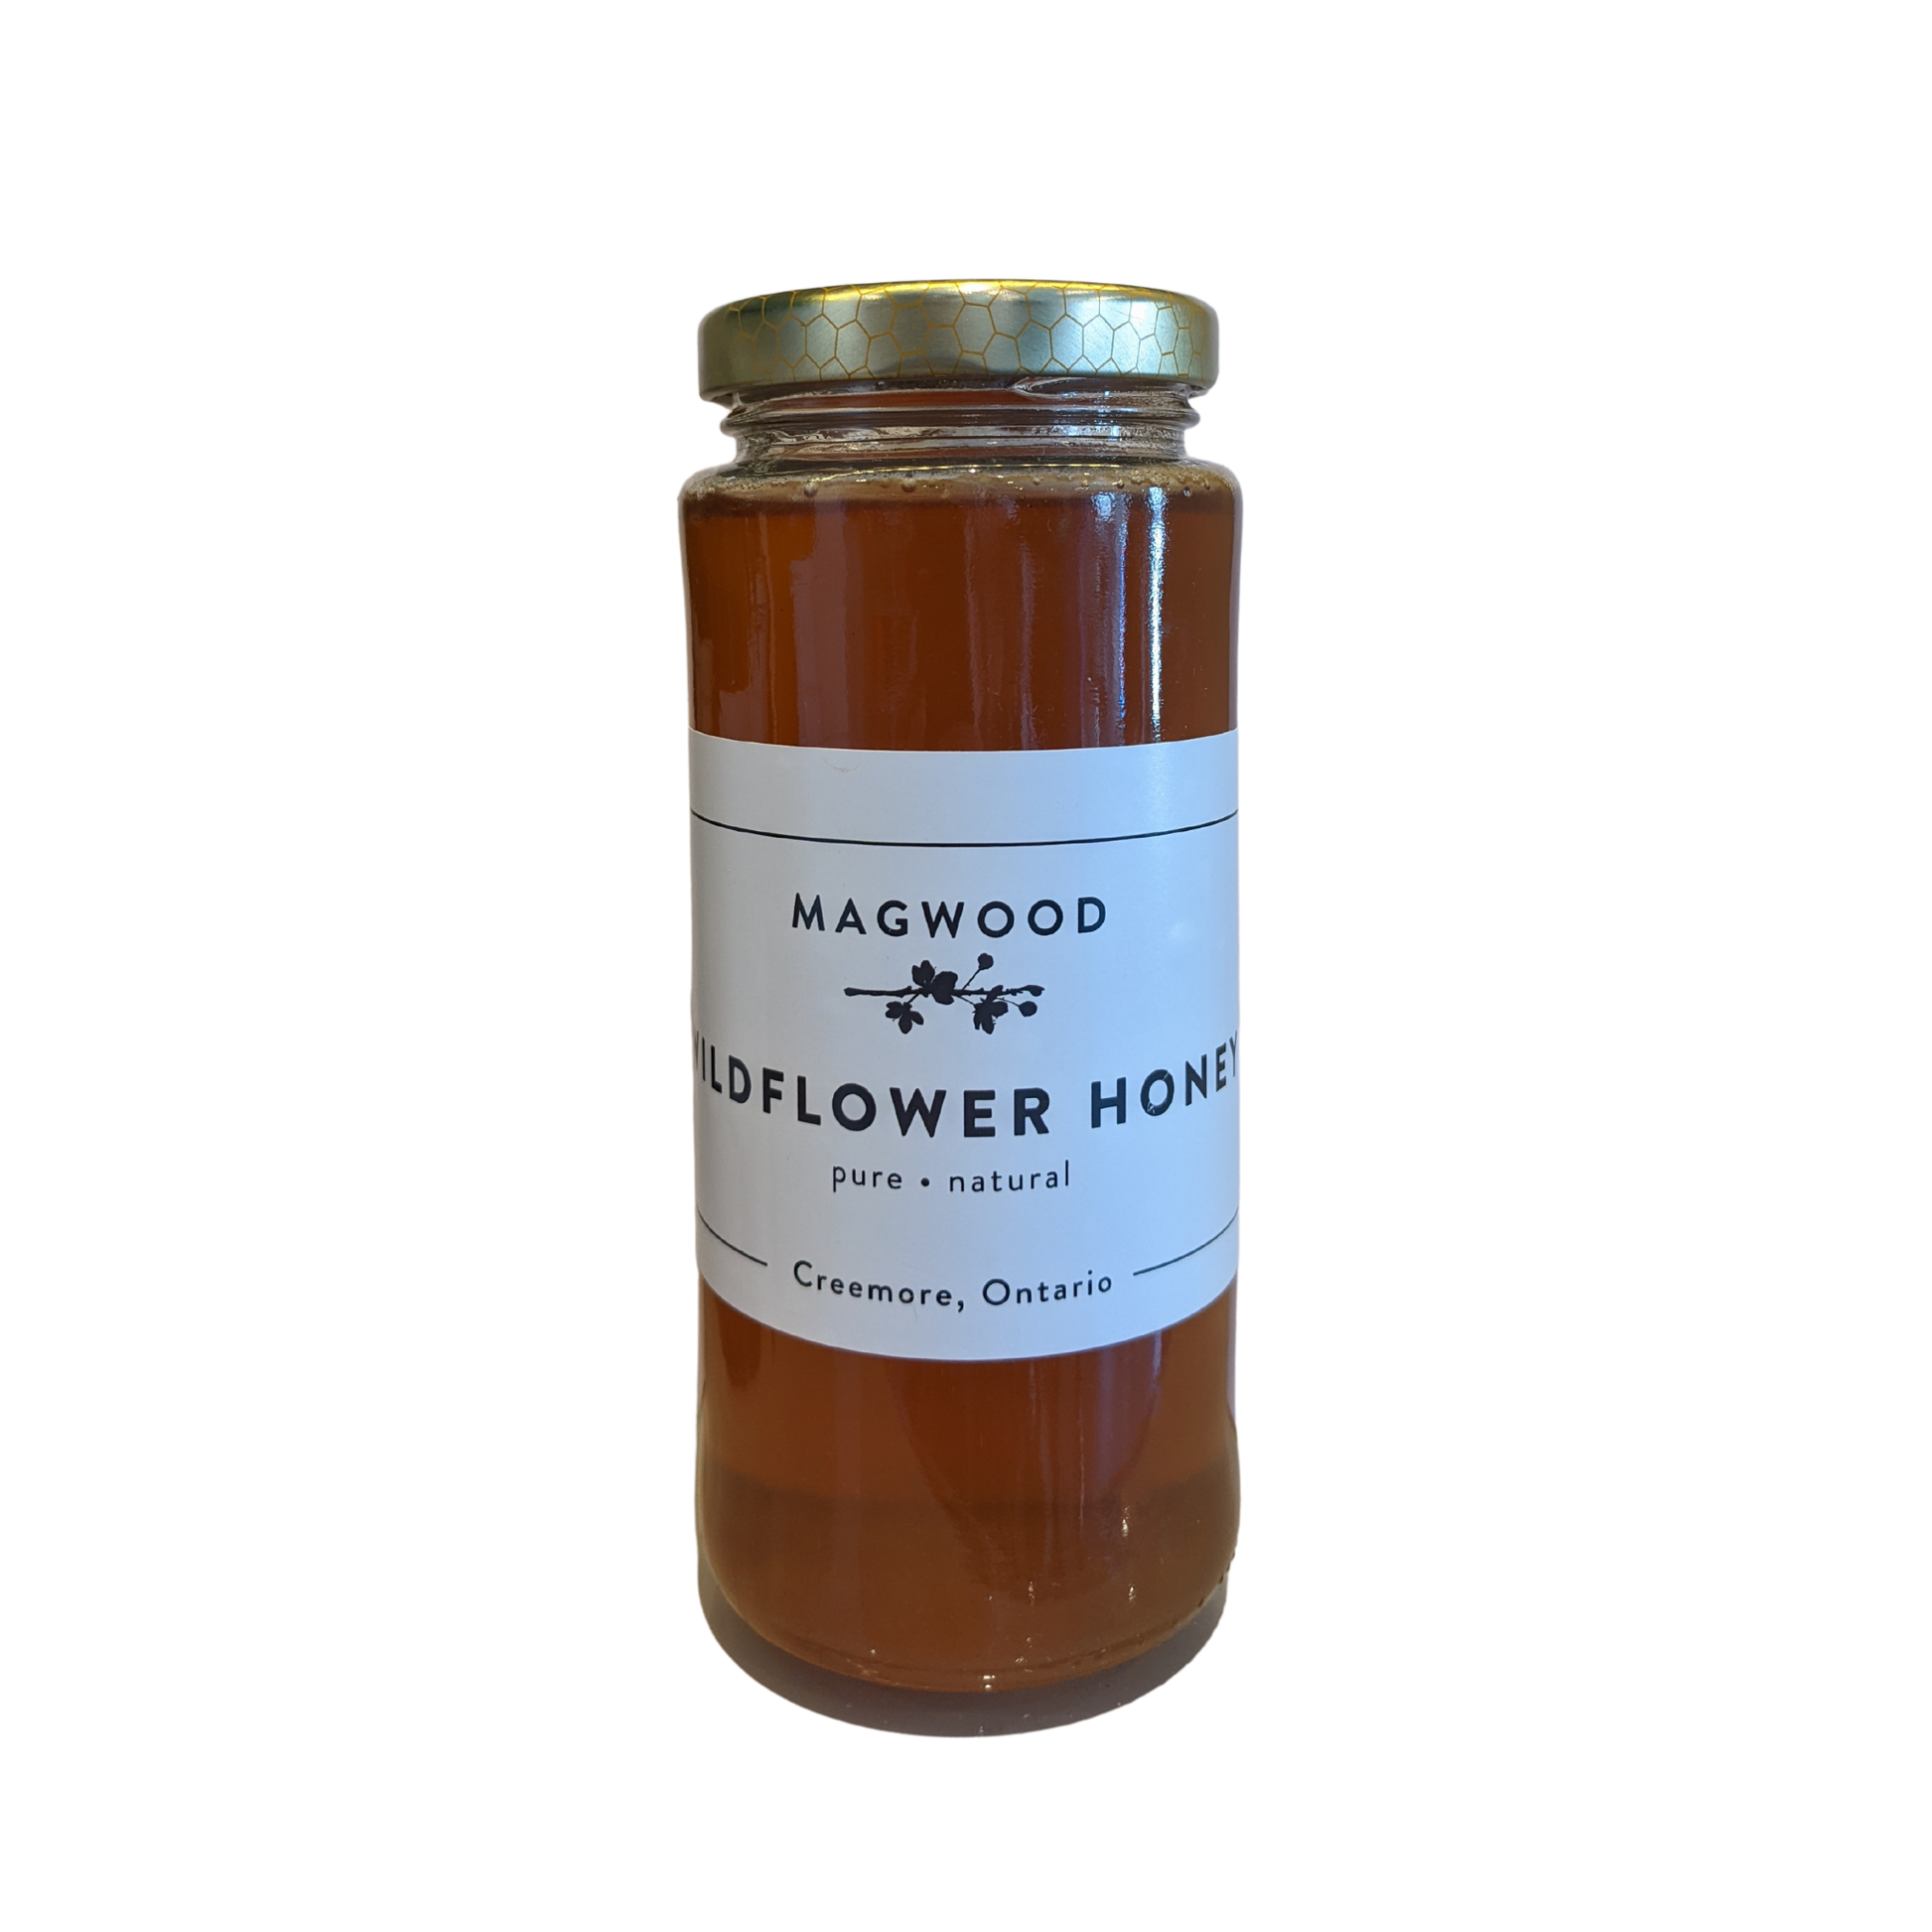 Magwood Wildflower Honey